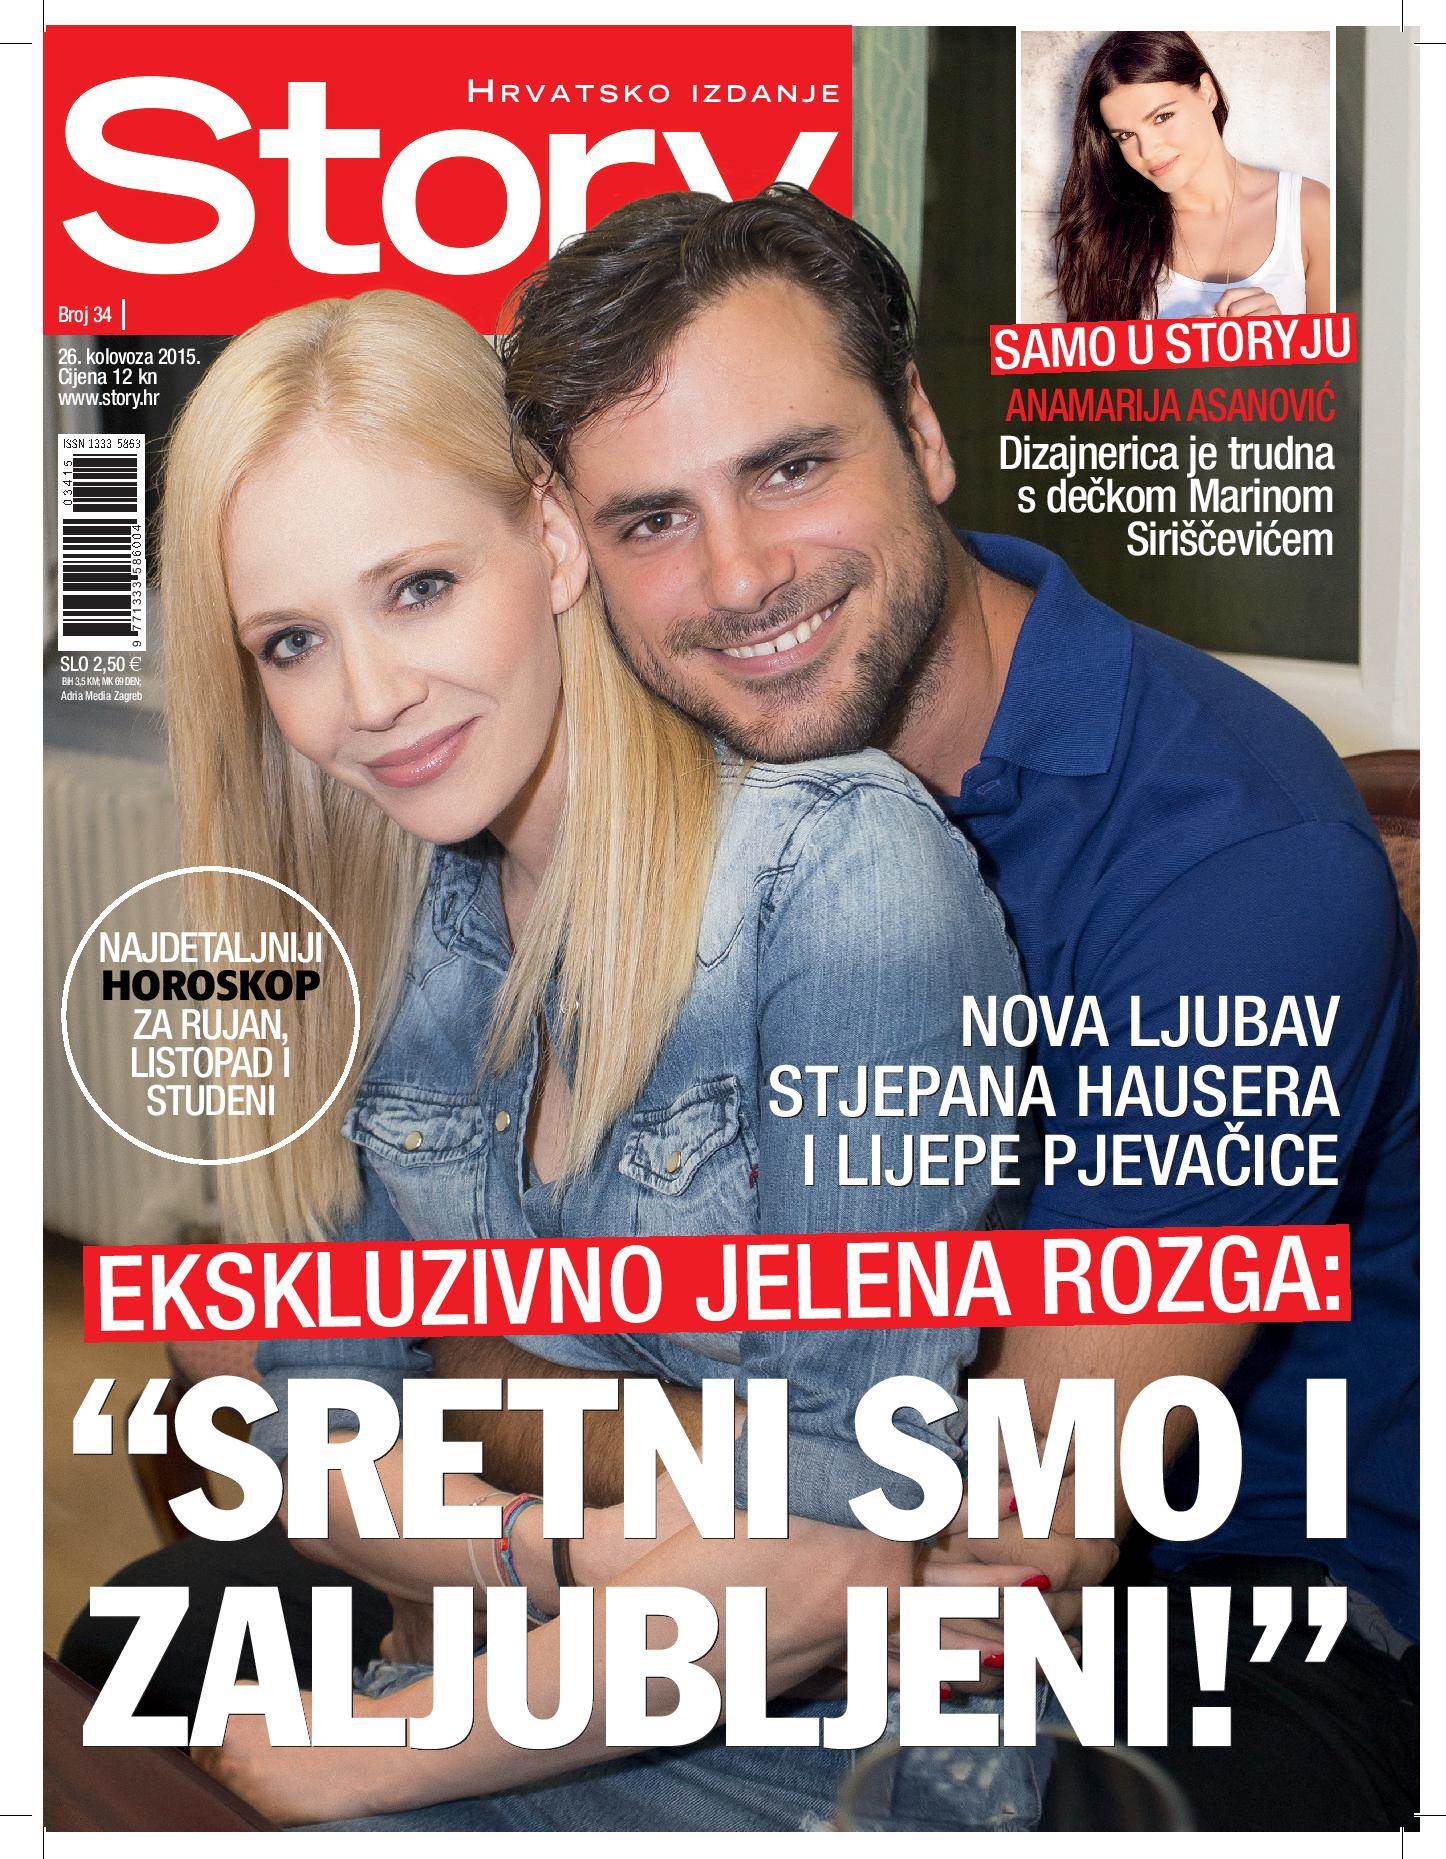 Jelena Rozga i Stjepan Hauser potvrdili su da su u vezi za časopis Story